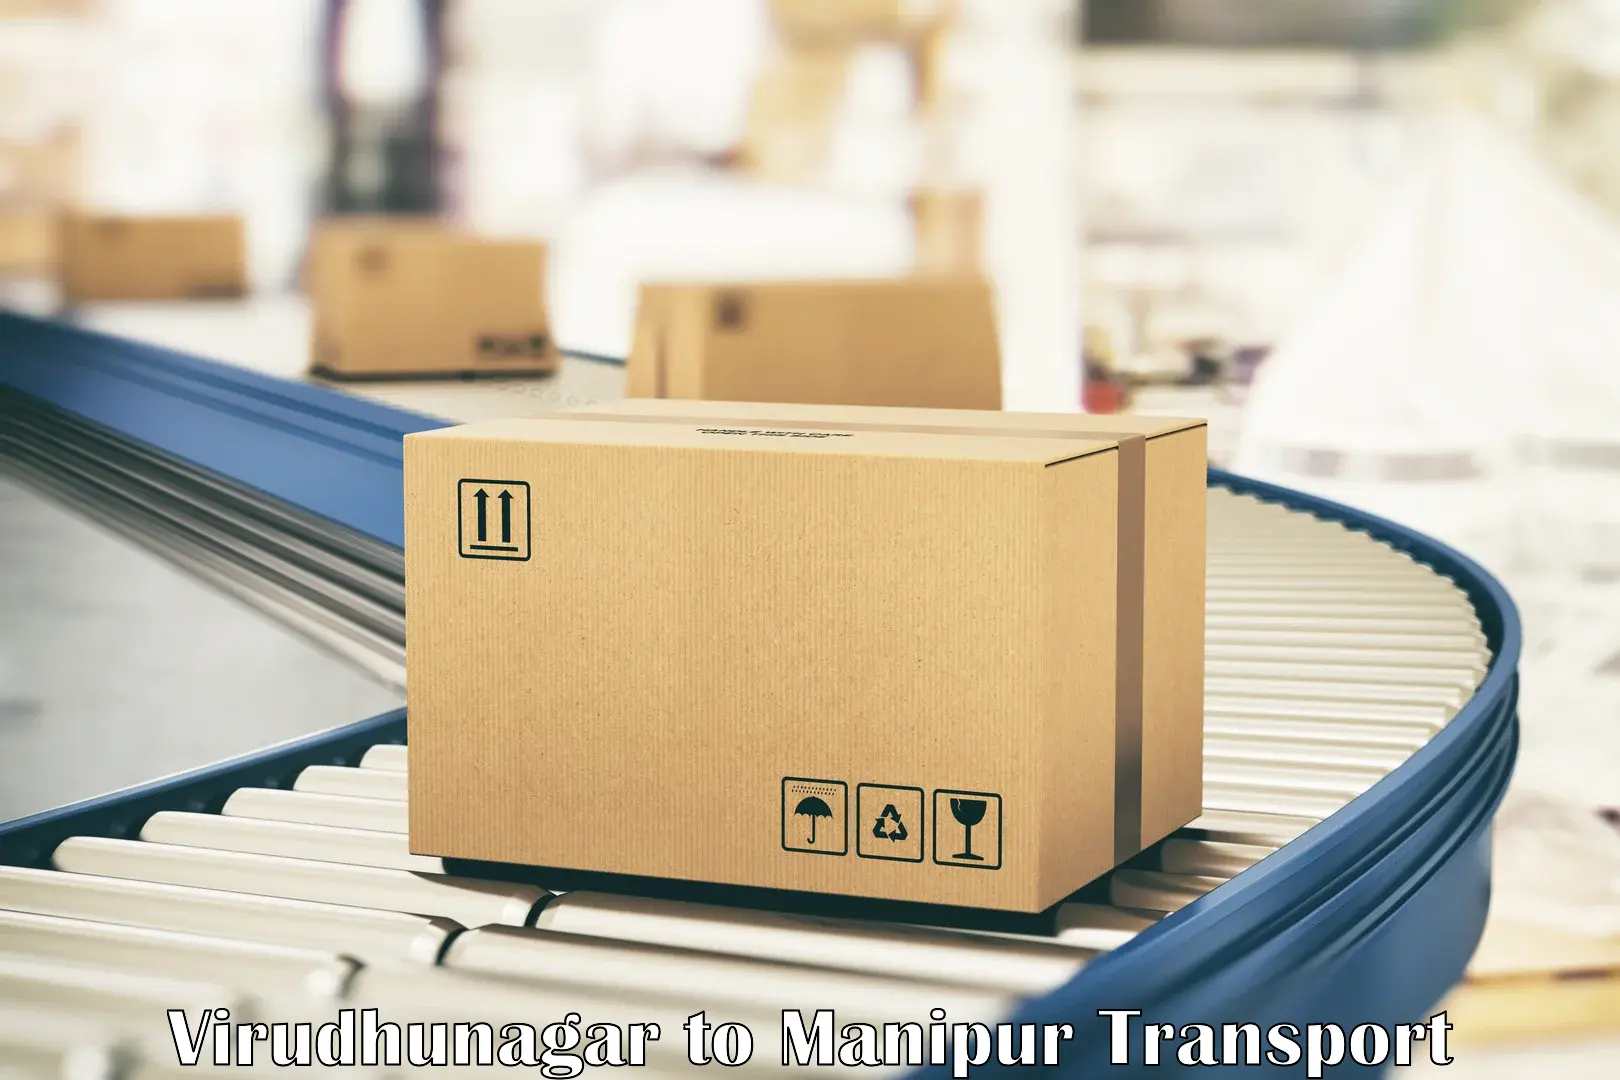 Furniture transport service Virudhunagar to Manipur